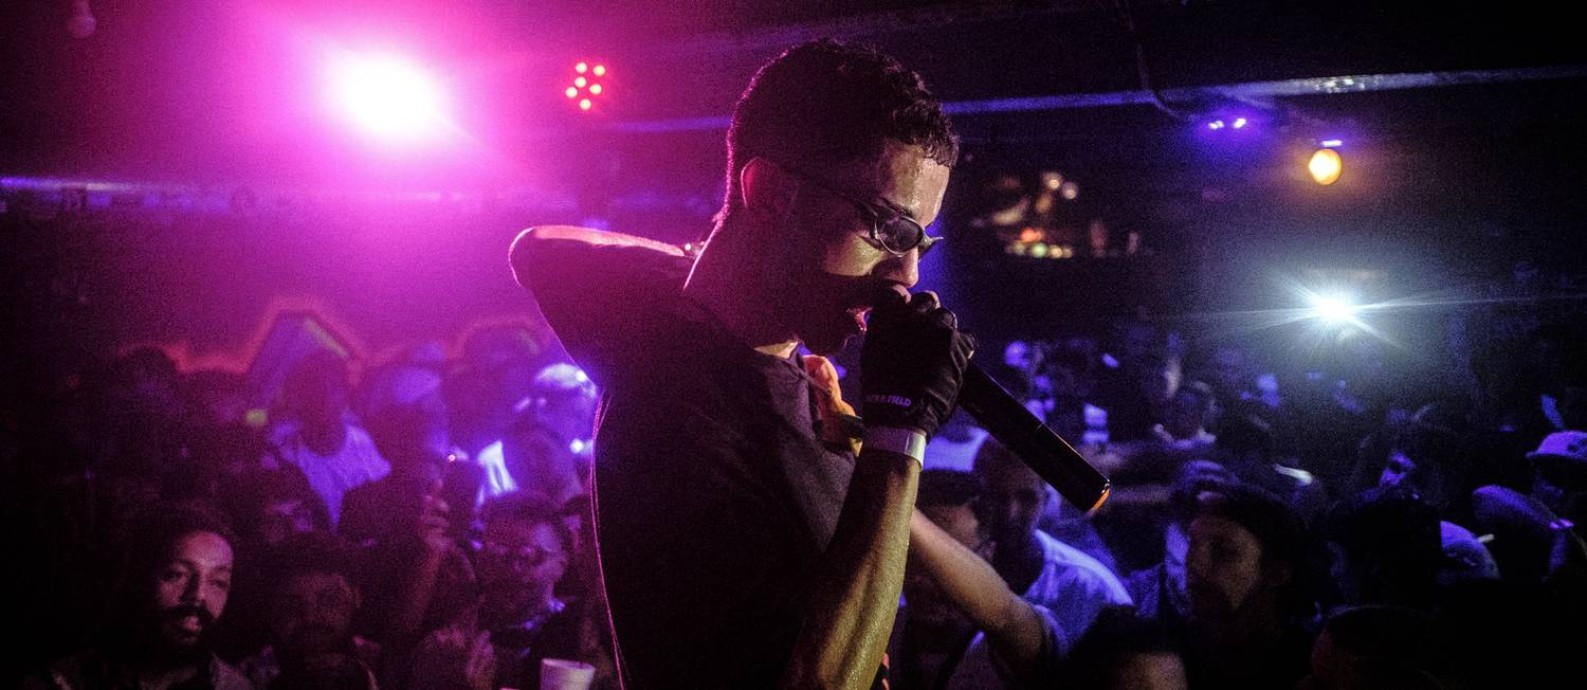 O rapper Sidoka em cena do documentário “Música pelo Brasil: Trap”, de Felipe Larozza Foto: Felipe Larozza / Divulgação